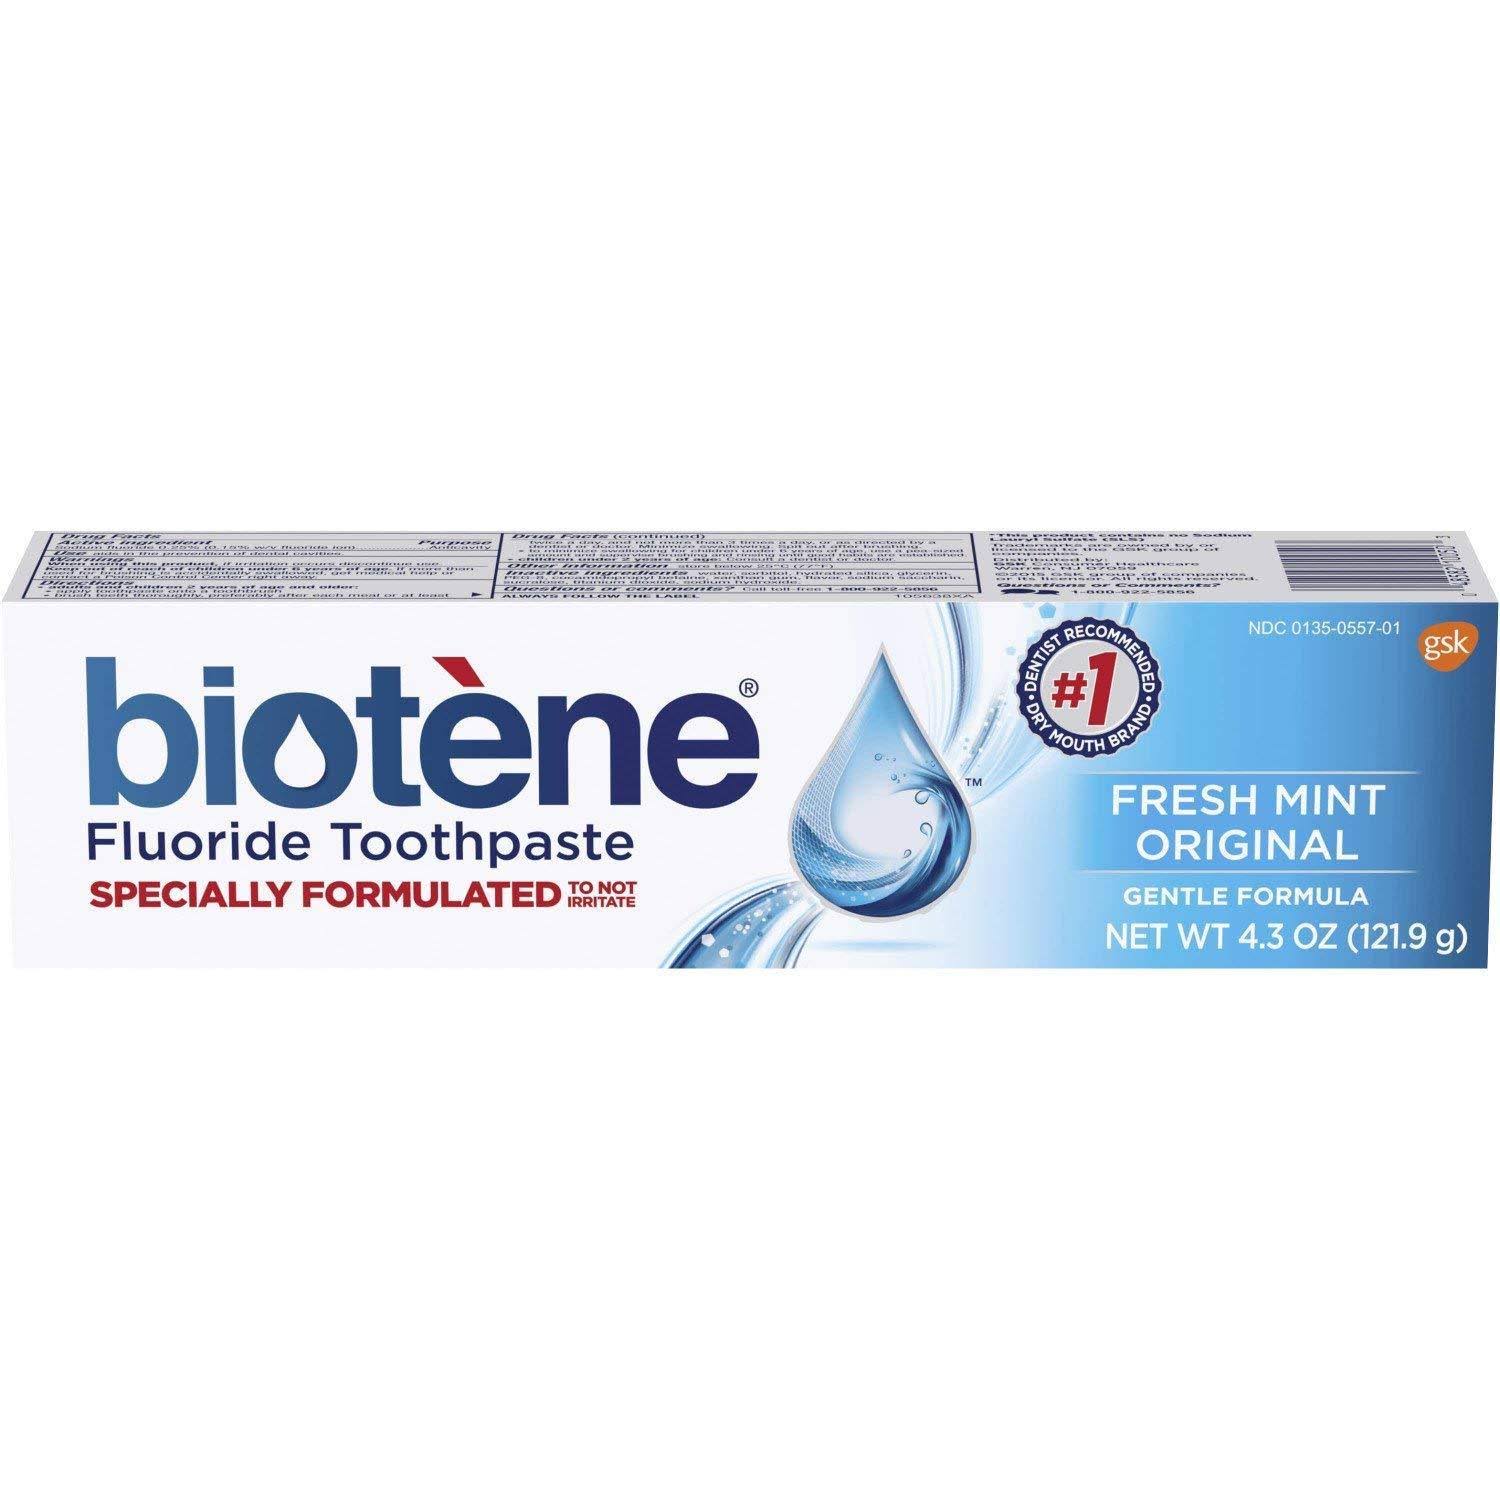 Biotene Gentle Formula Fluoride Toothpaste - Fresh Mint, 4.3oz